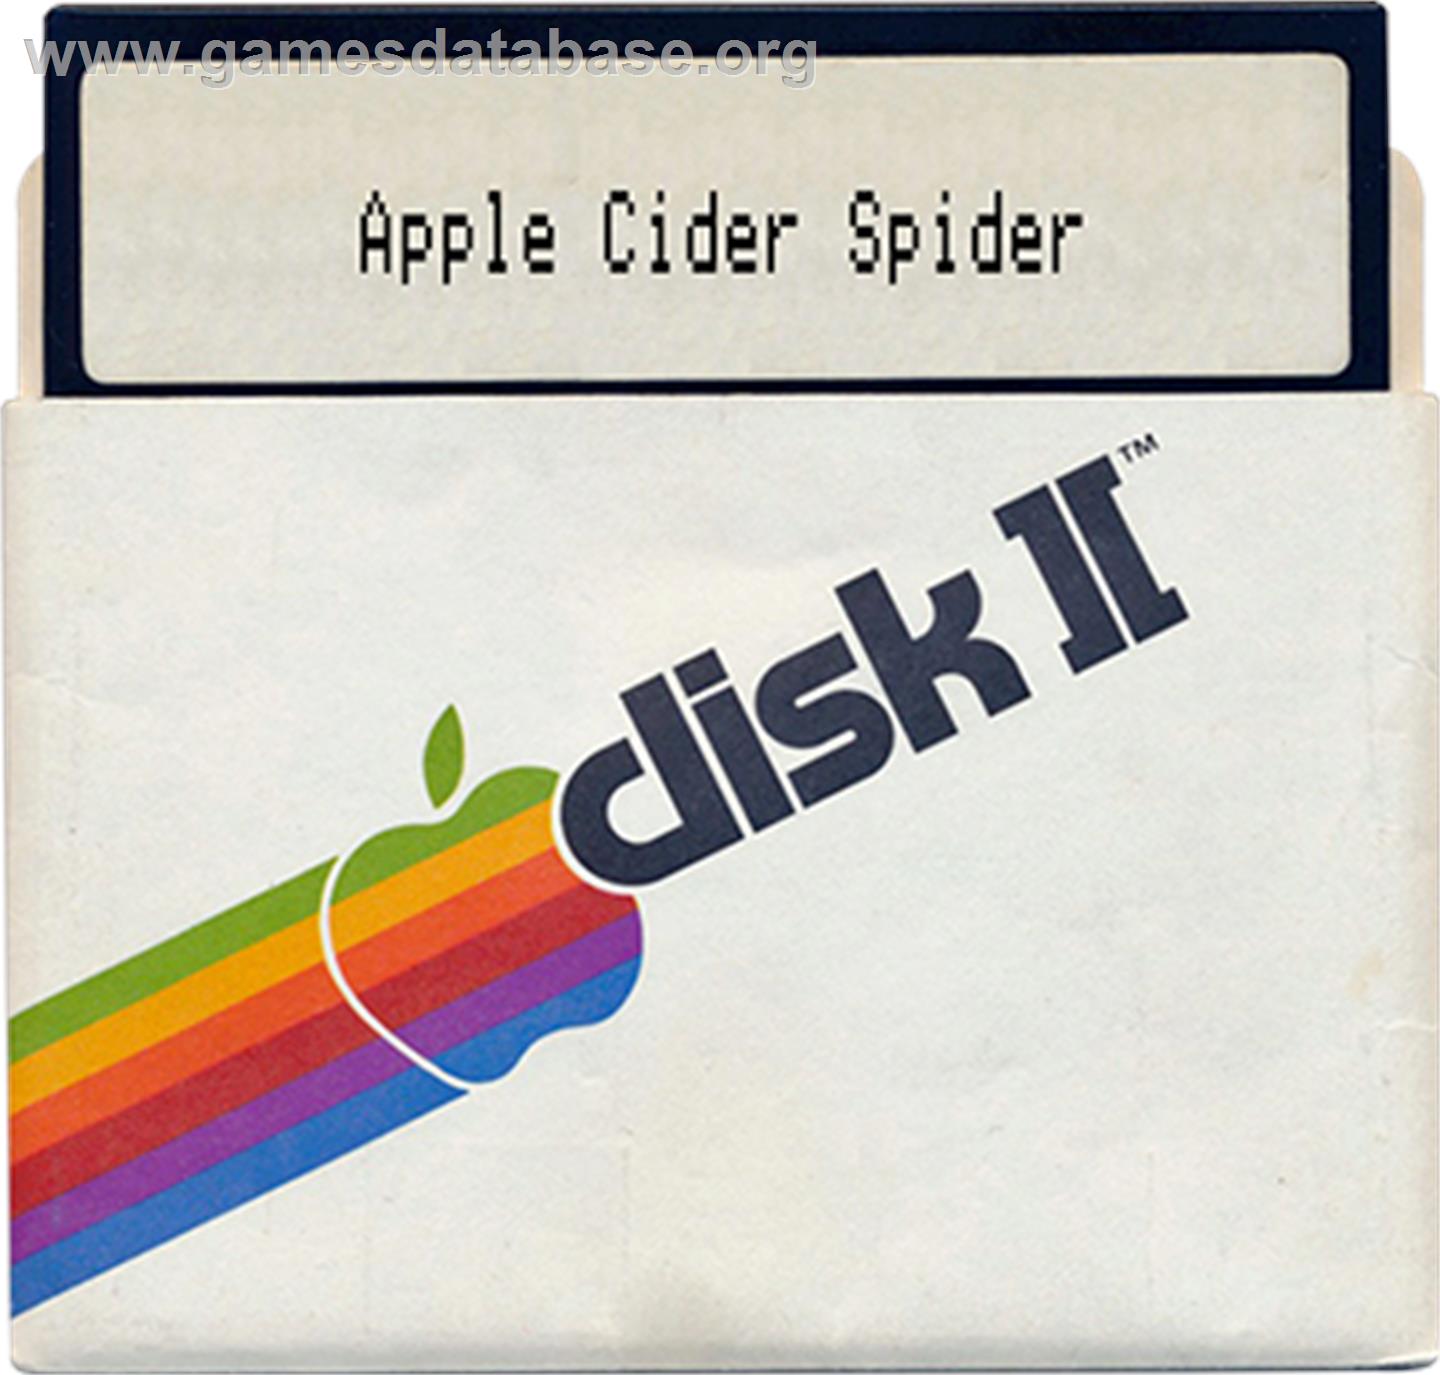 Apple Cider Spider - Apple II - Artwork - Disc